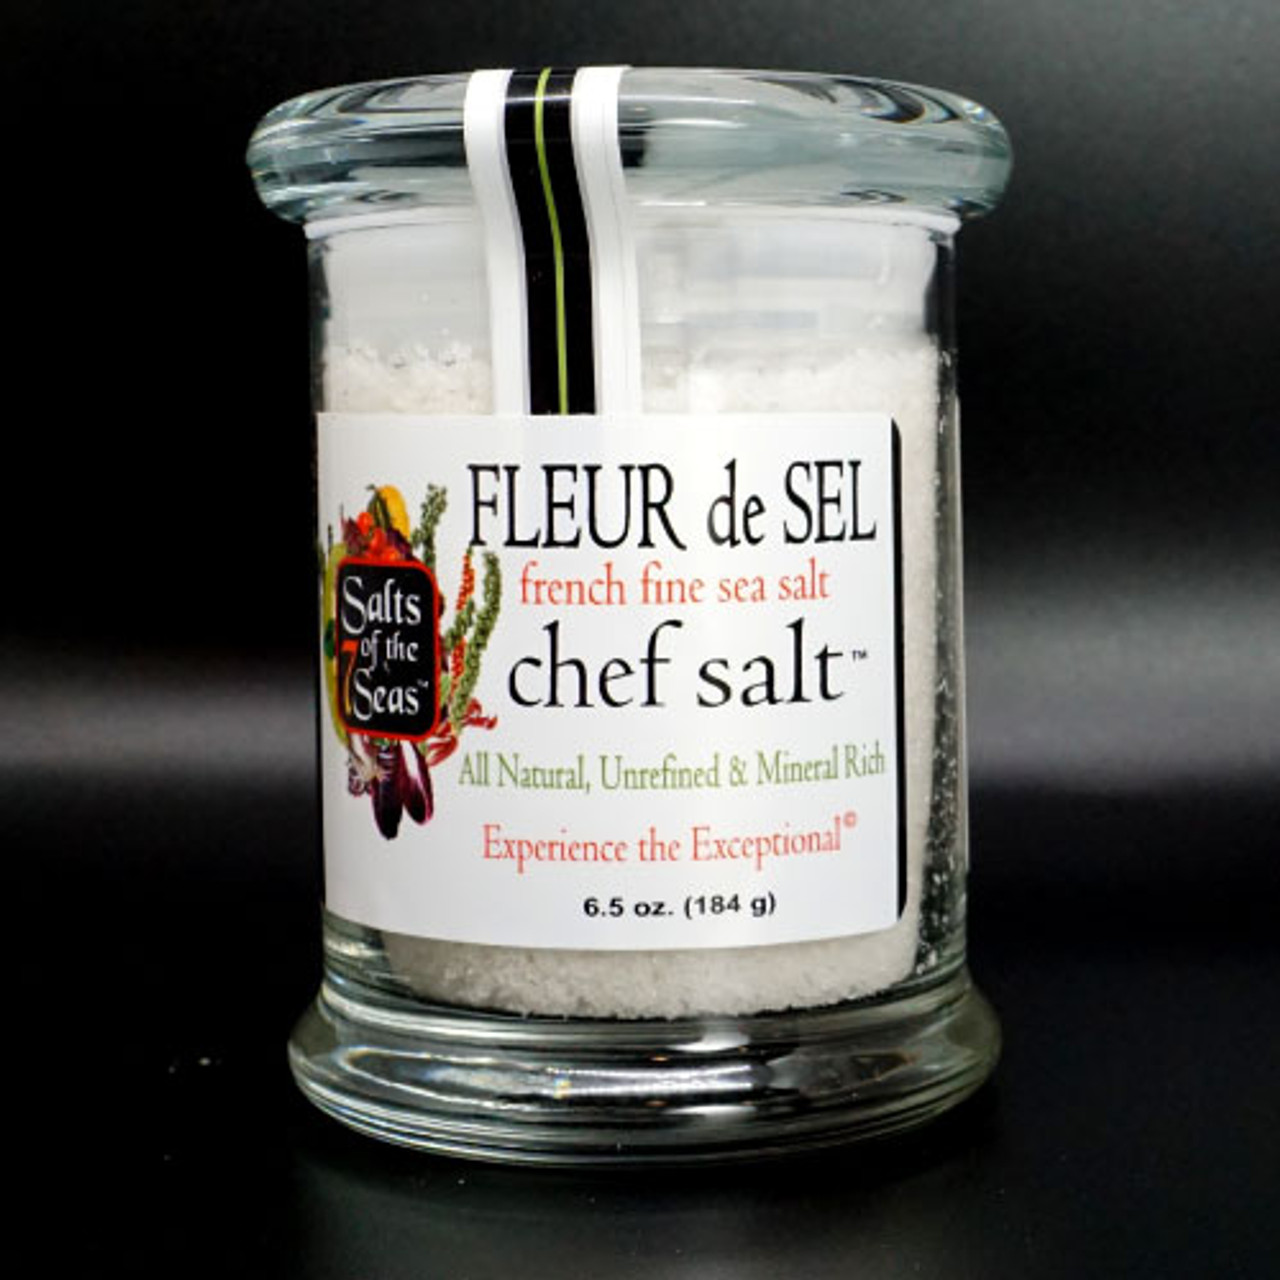 Fleur de Sel: The Salt Of The French Coast